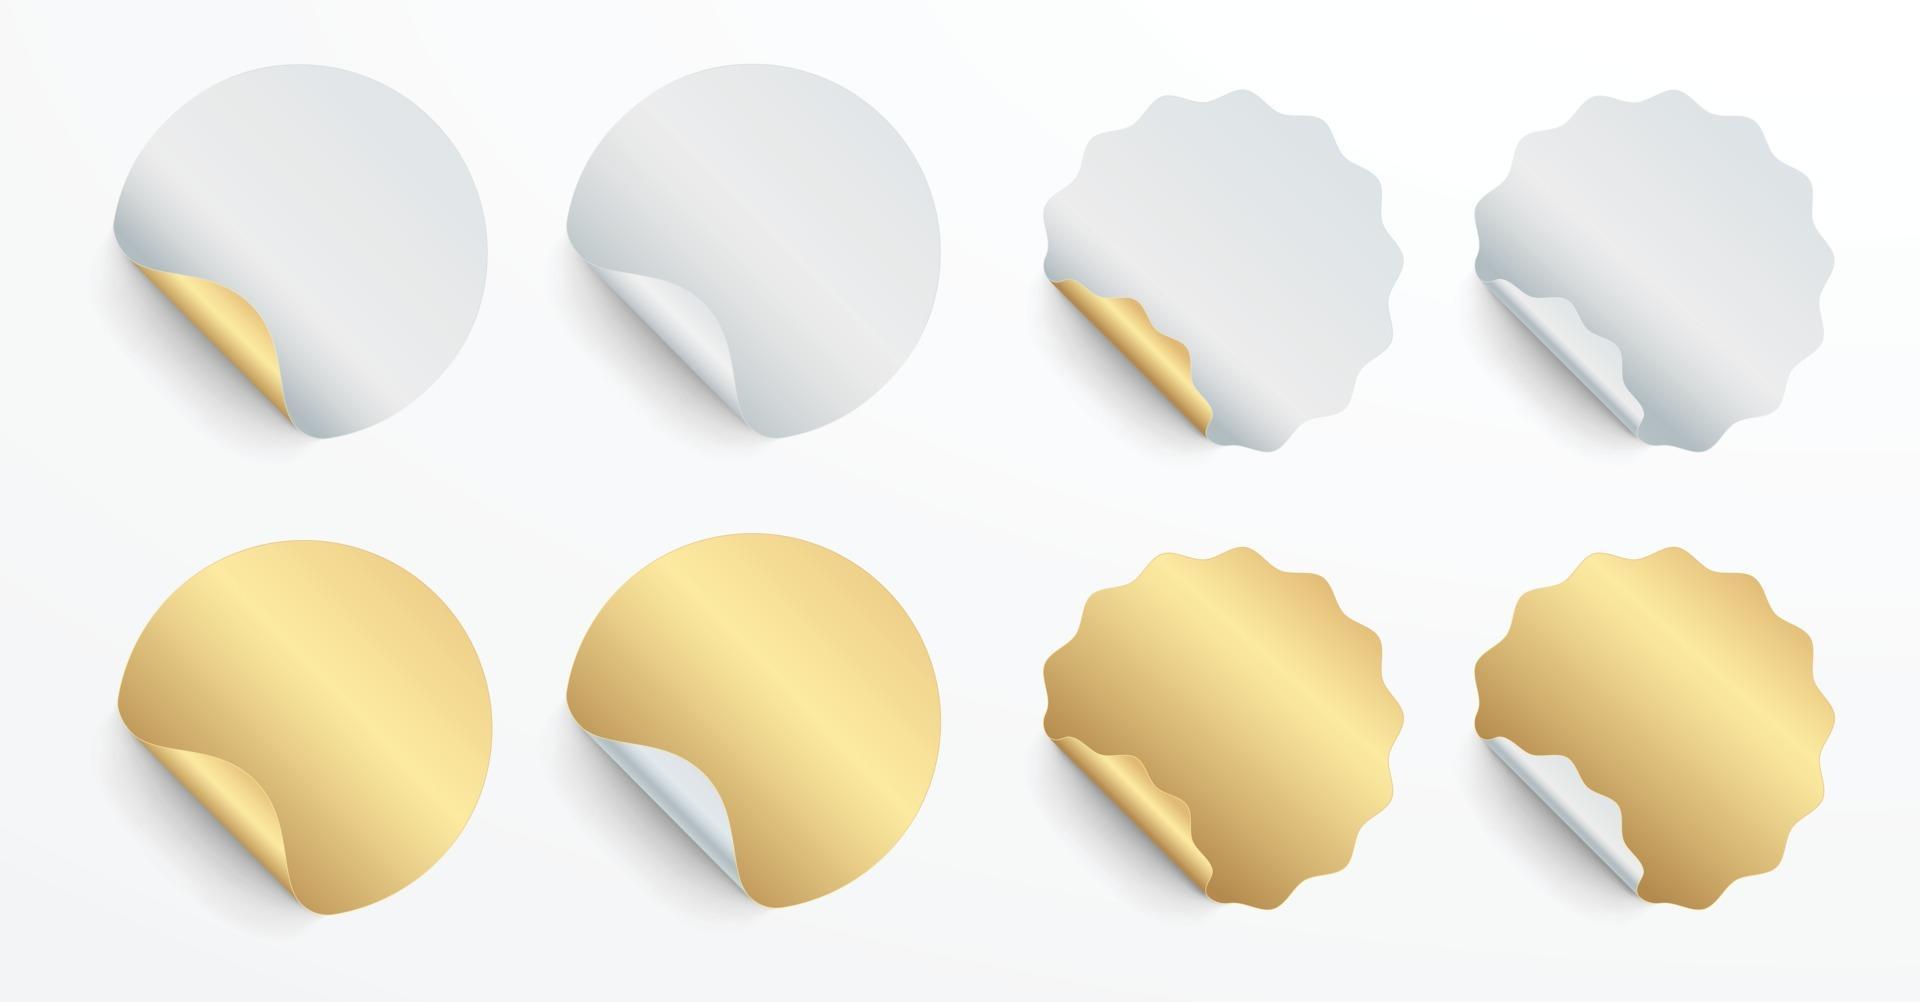 Conjunto realista de pegatinas o parches blancos y dorados. etiquetas en blanco de diferentes formas redondas y círculo de sello. Vector 3d